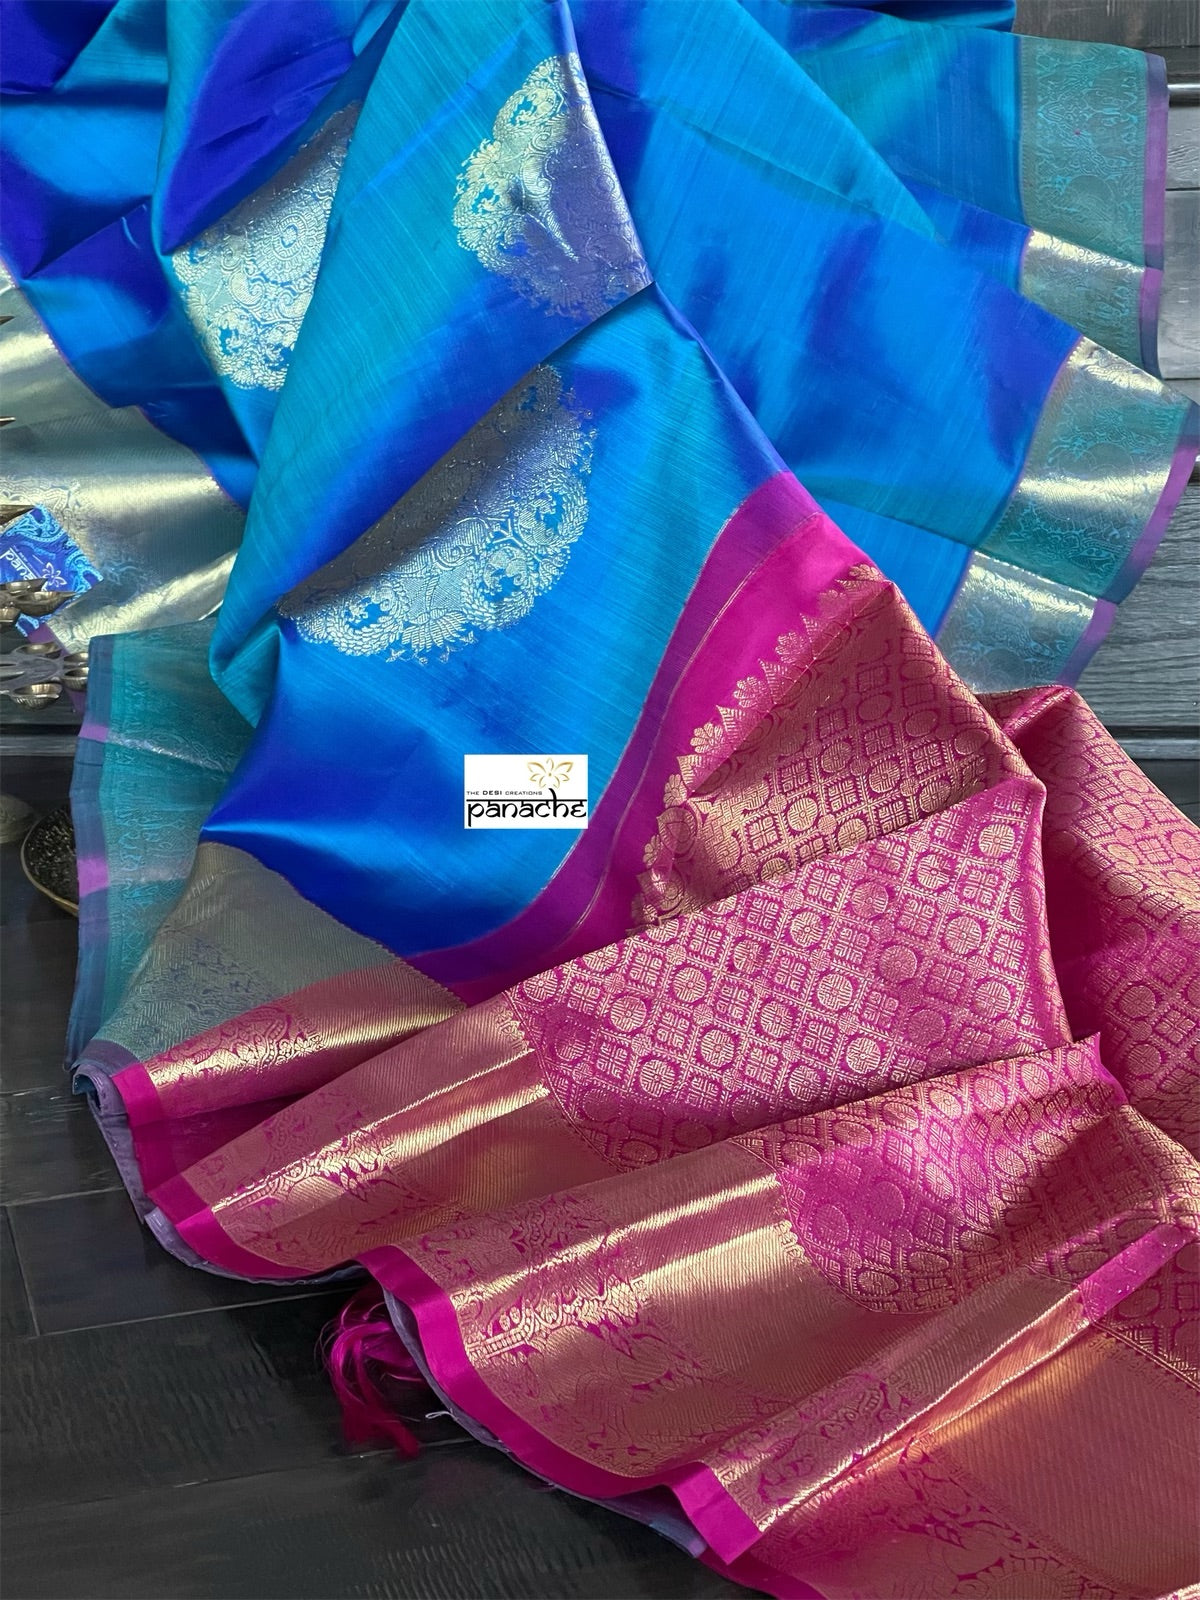 Silk Kanjivaram - Blue Dual Shaded